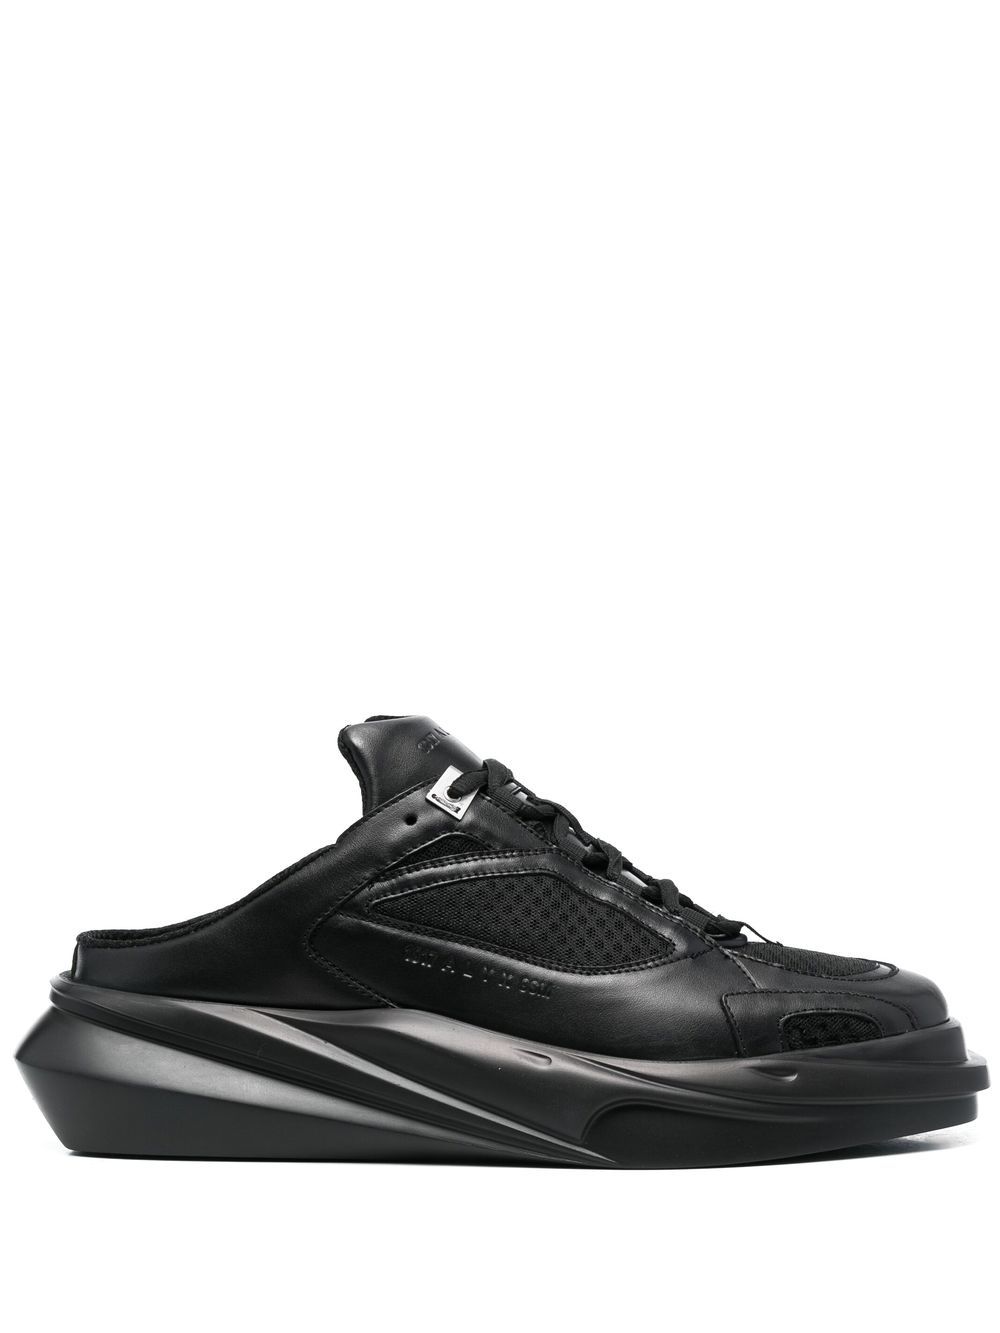 1017 ALYX 9SM Mono slip-on sneakers - Black von 1017 ALYX 9SM